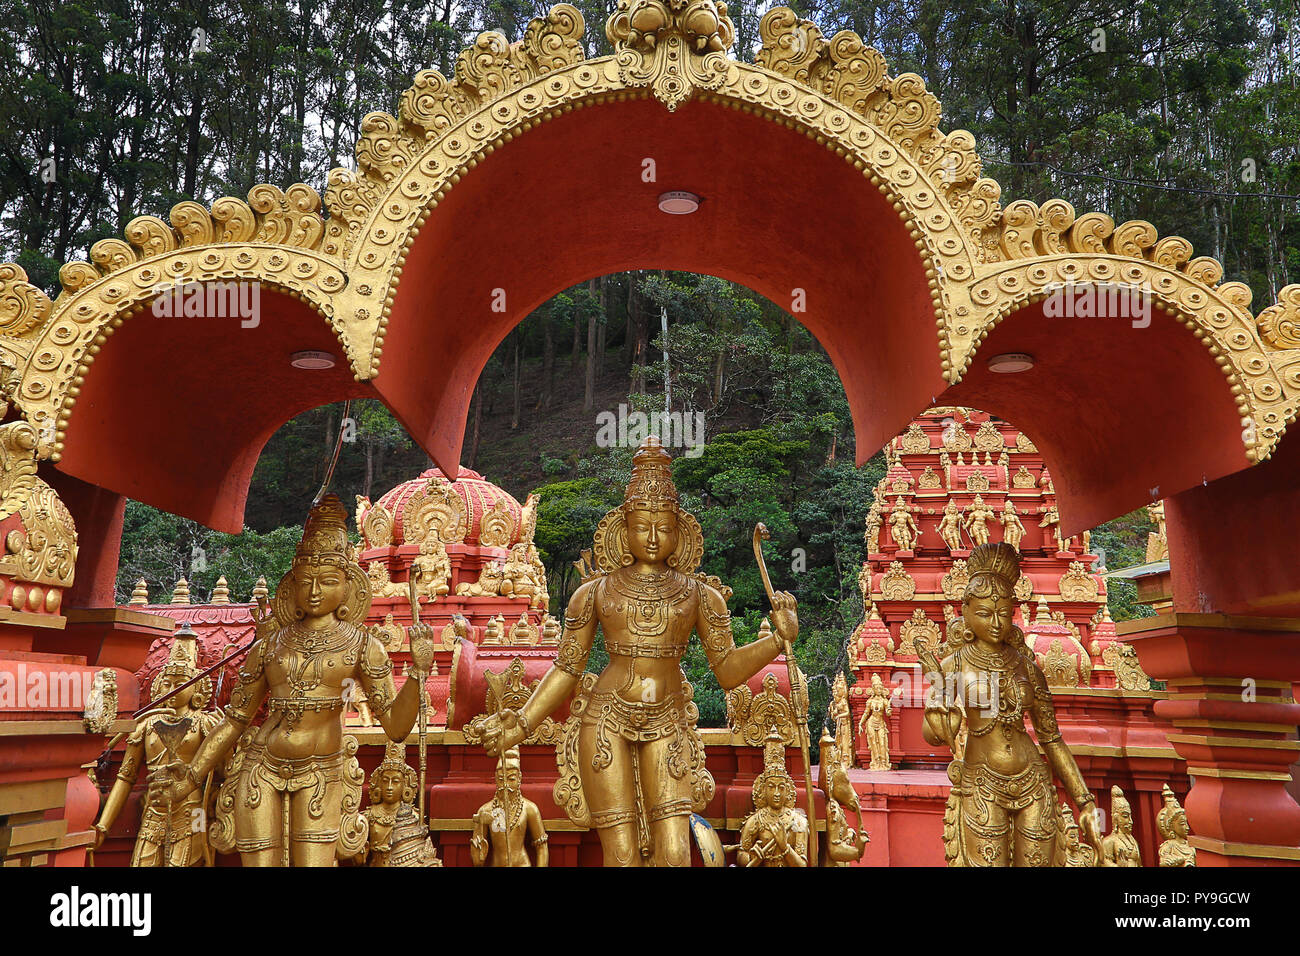 Colorful Seetha Amman Hindu temple in Nuwara Eliya, Sri Lanka. Stock Photo